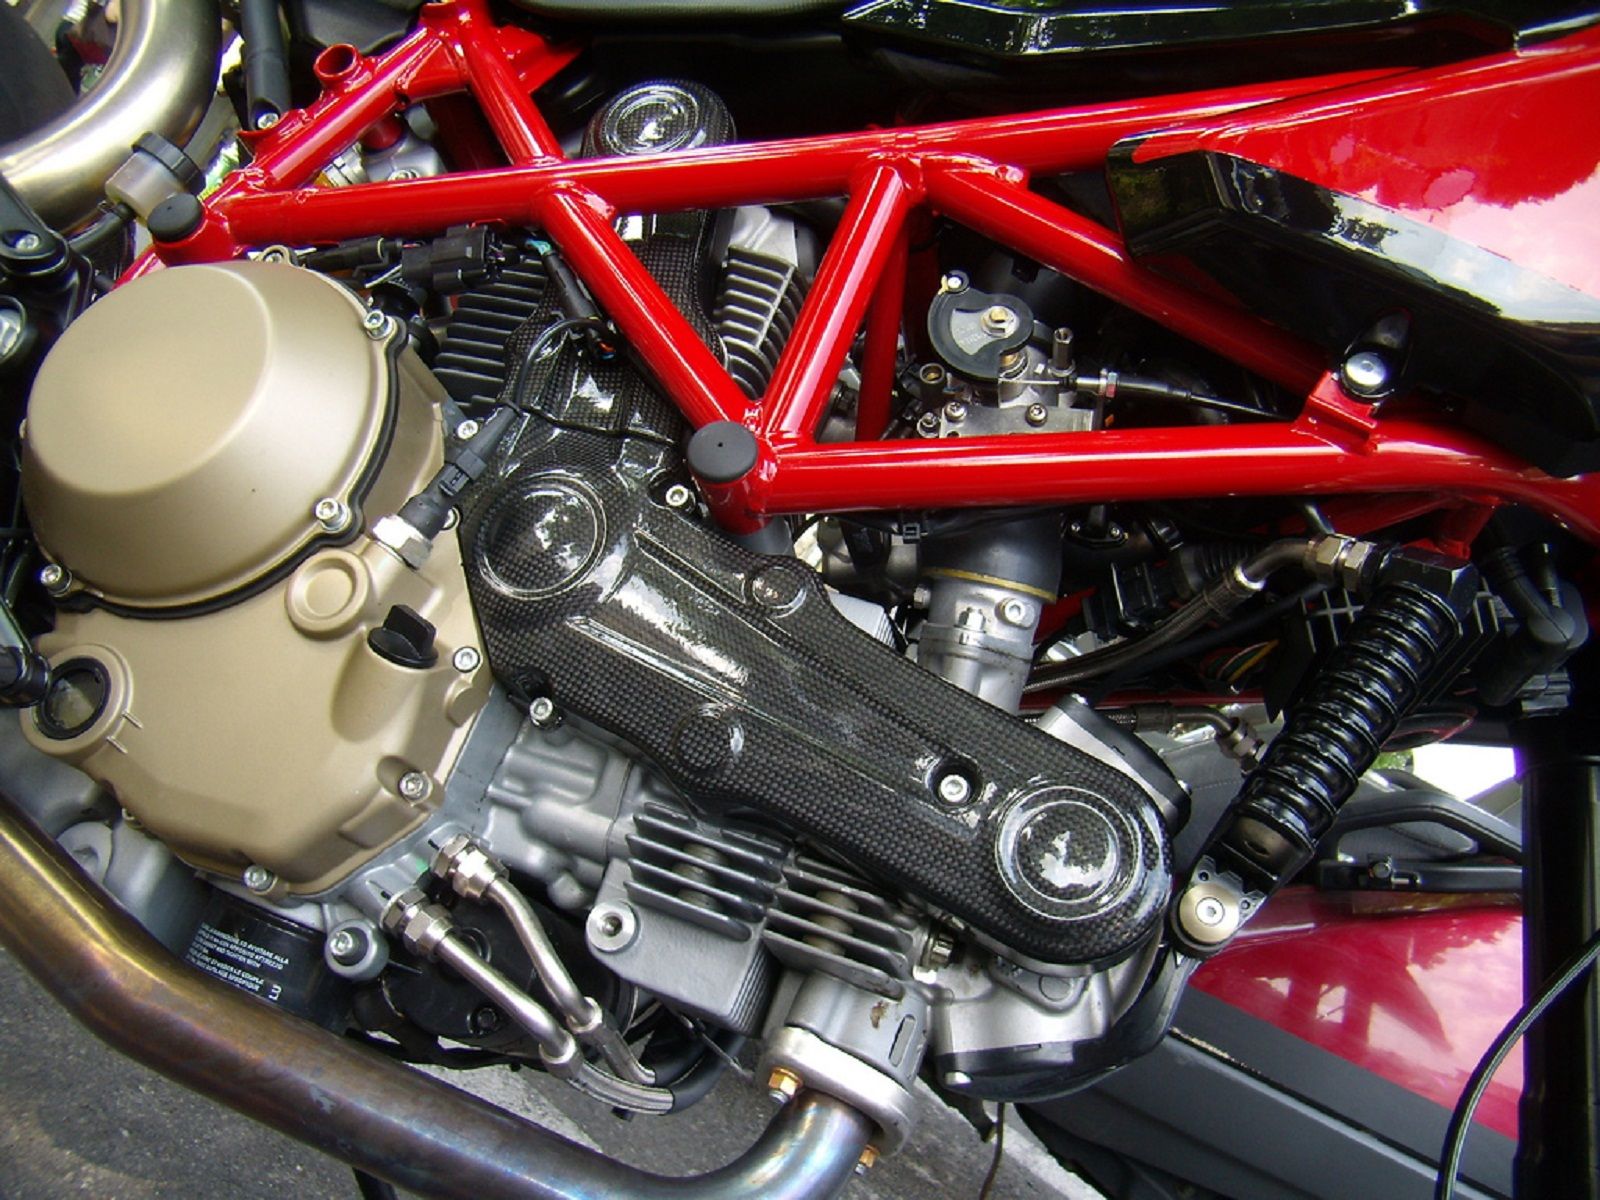 2012 Ducati Hypermotard 1100 EVO SP